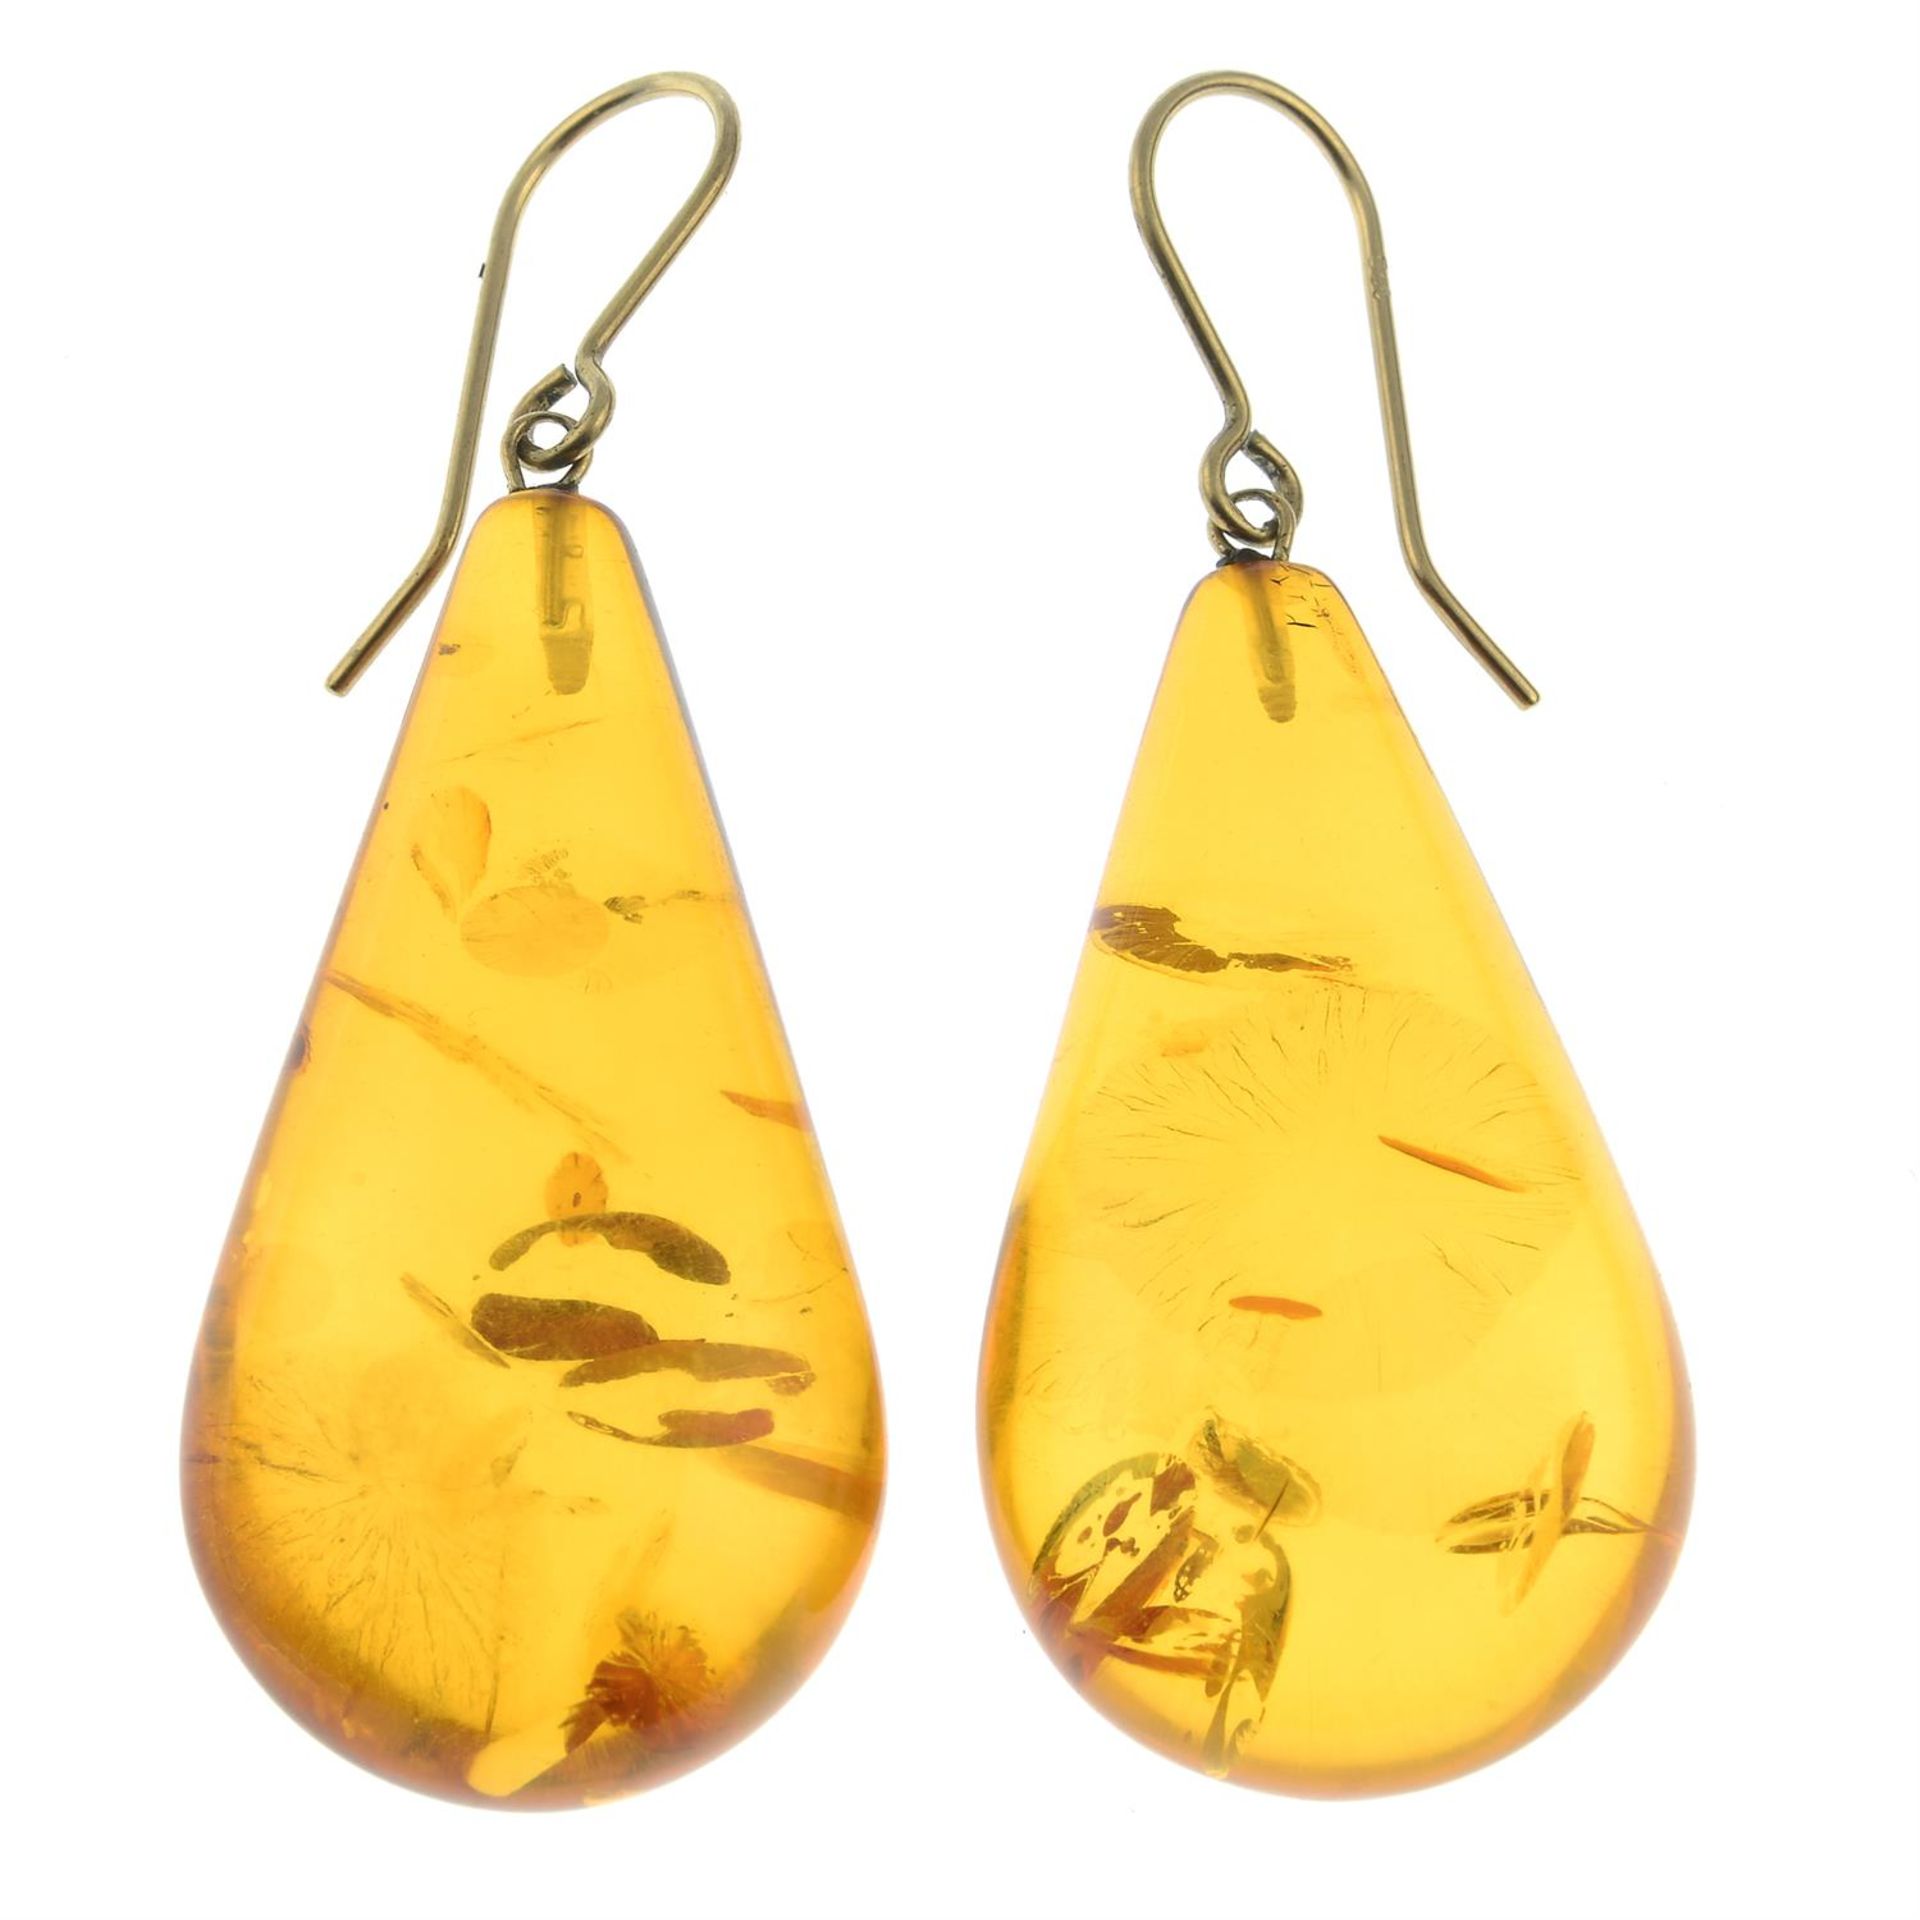 A pair of amber drop earrings.